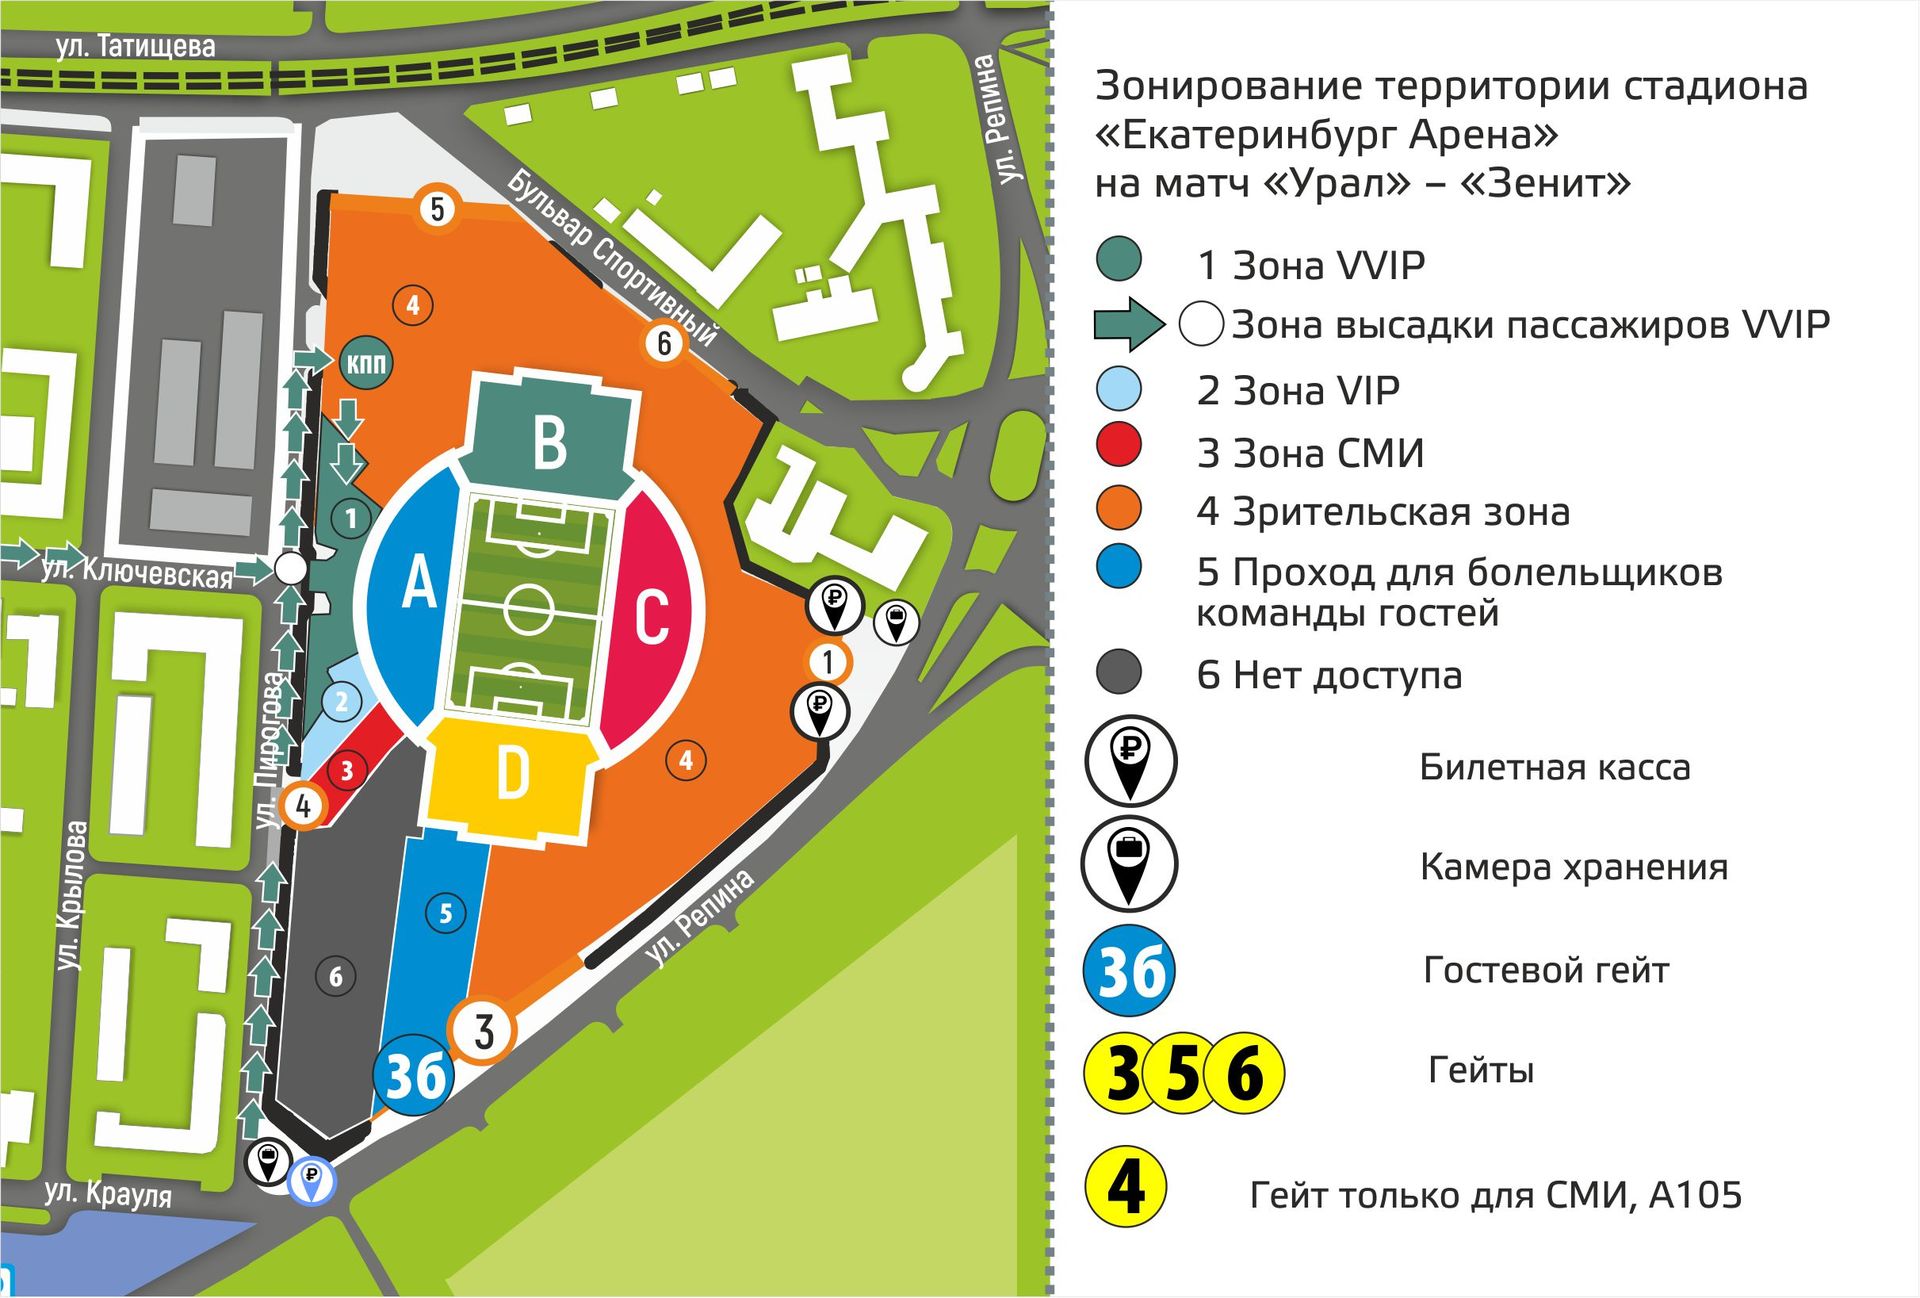 Схема прохода болельщиков на стадион «Екатеринбург Арена»